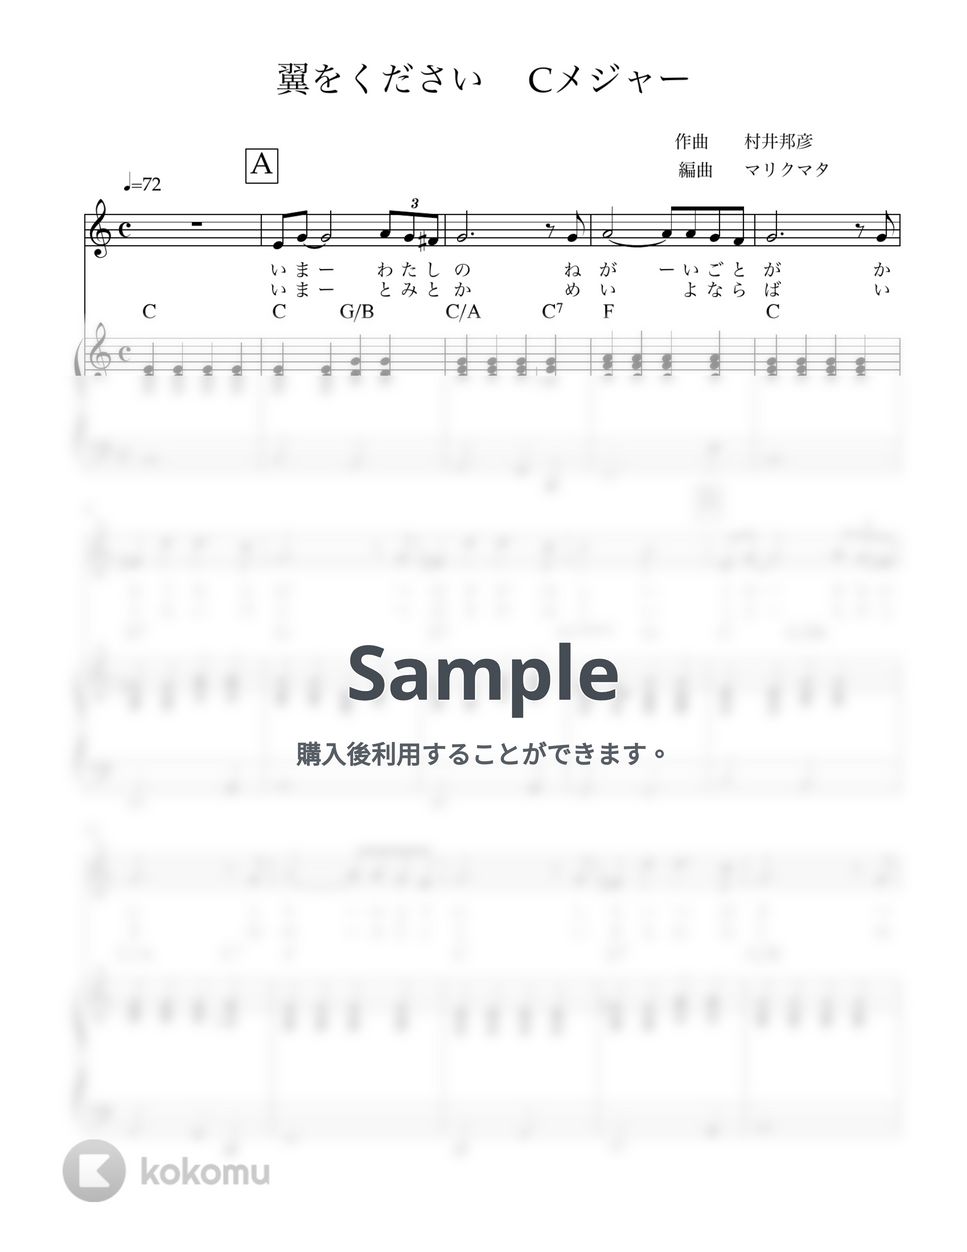 村井邦彦 - 翼をください (Key in C) 歌とピアノ by マリクマタ